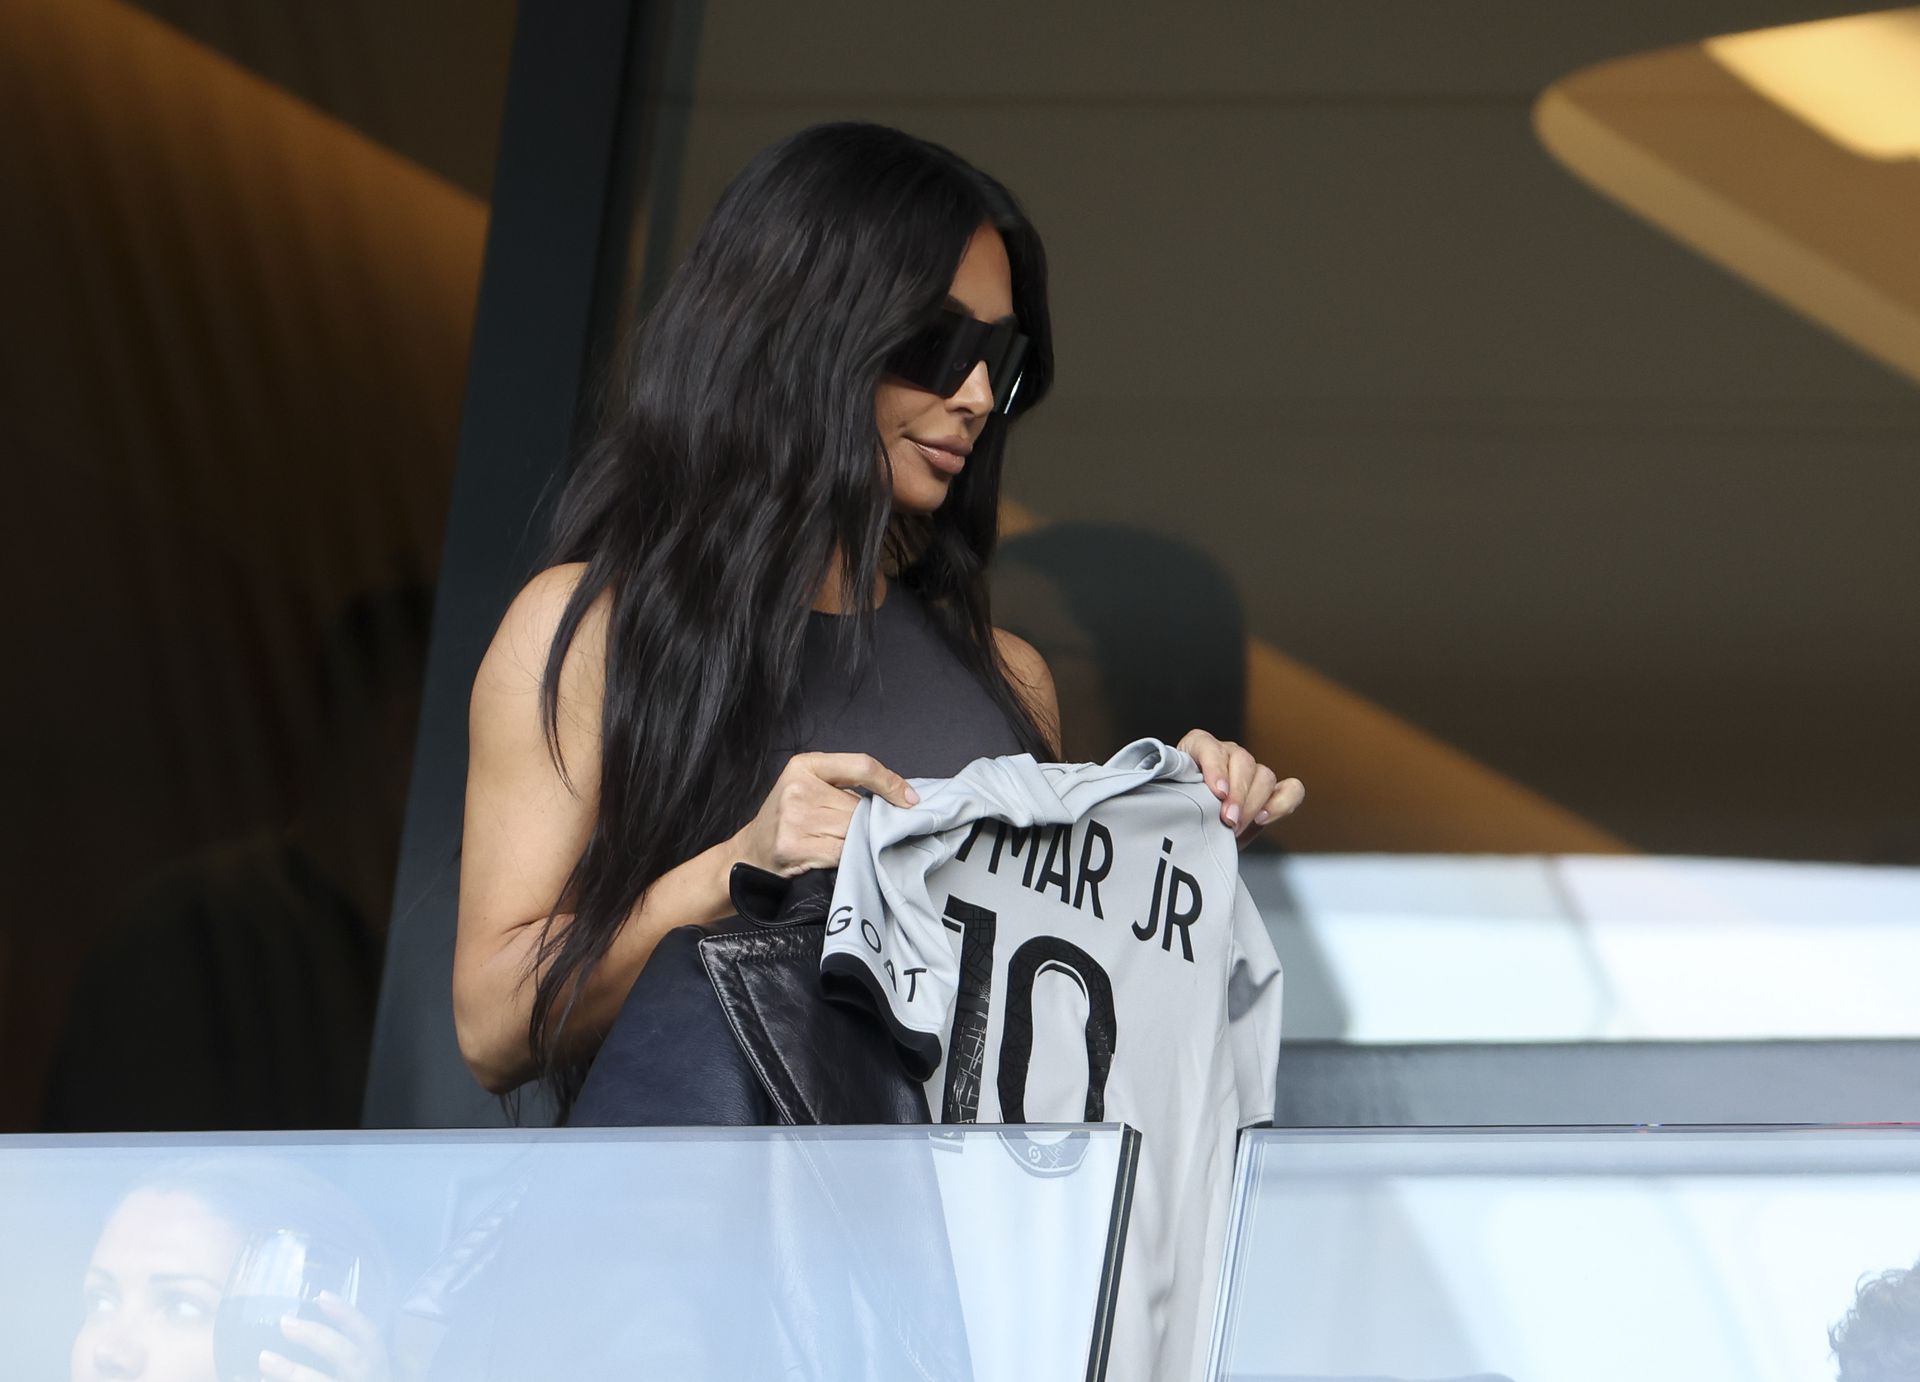 Bárhol jár, Kim Kardashian feltűnést kelt (Fotó: Getty Images)